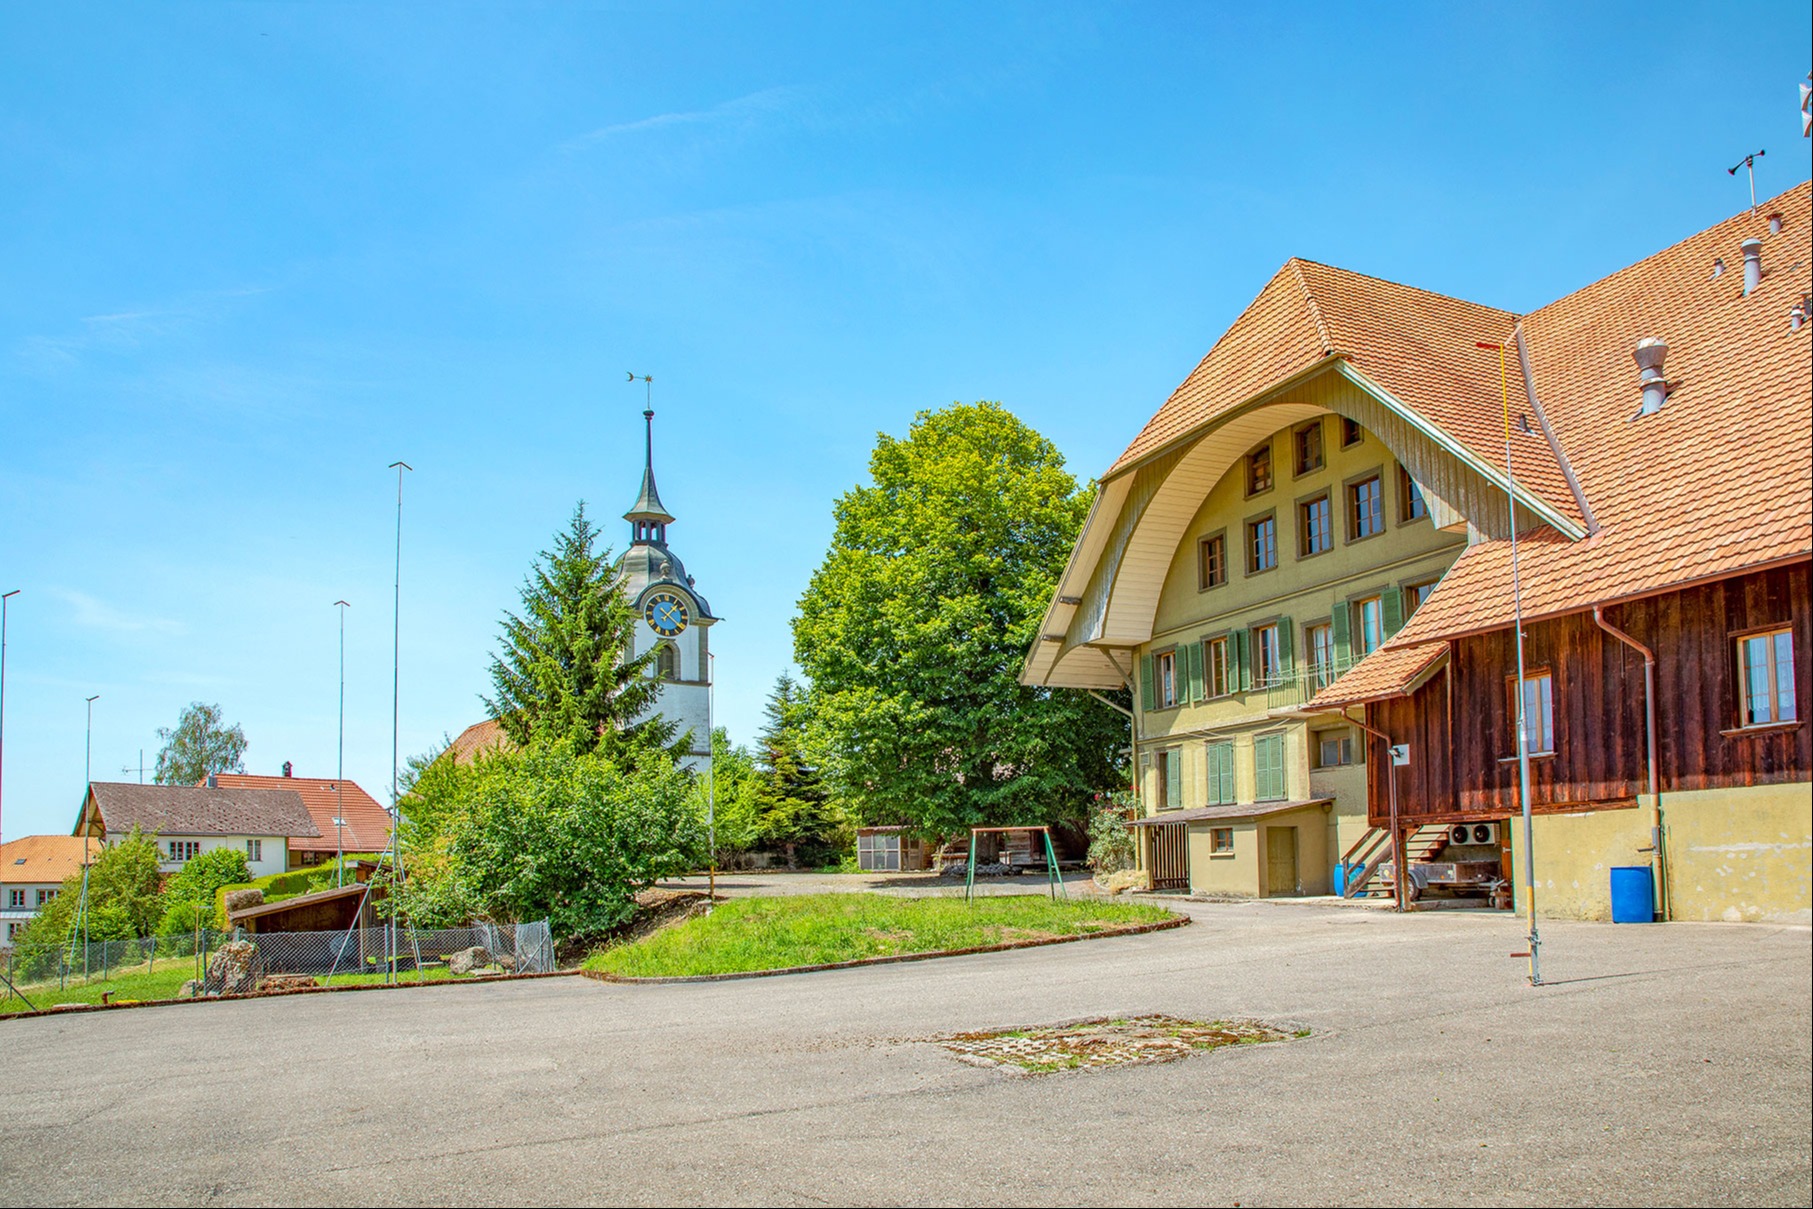 Ein touristischer Hotspot mitten in Trachselwald geplant